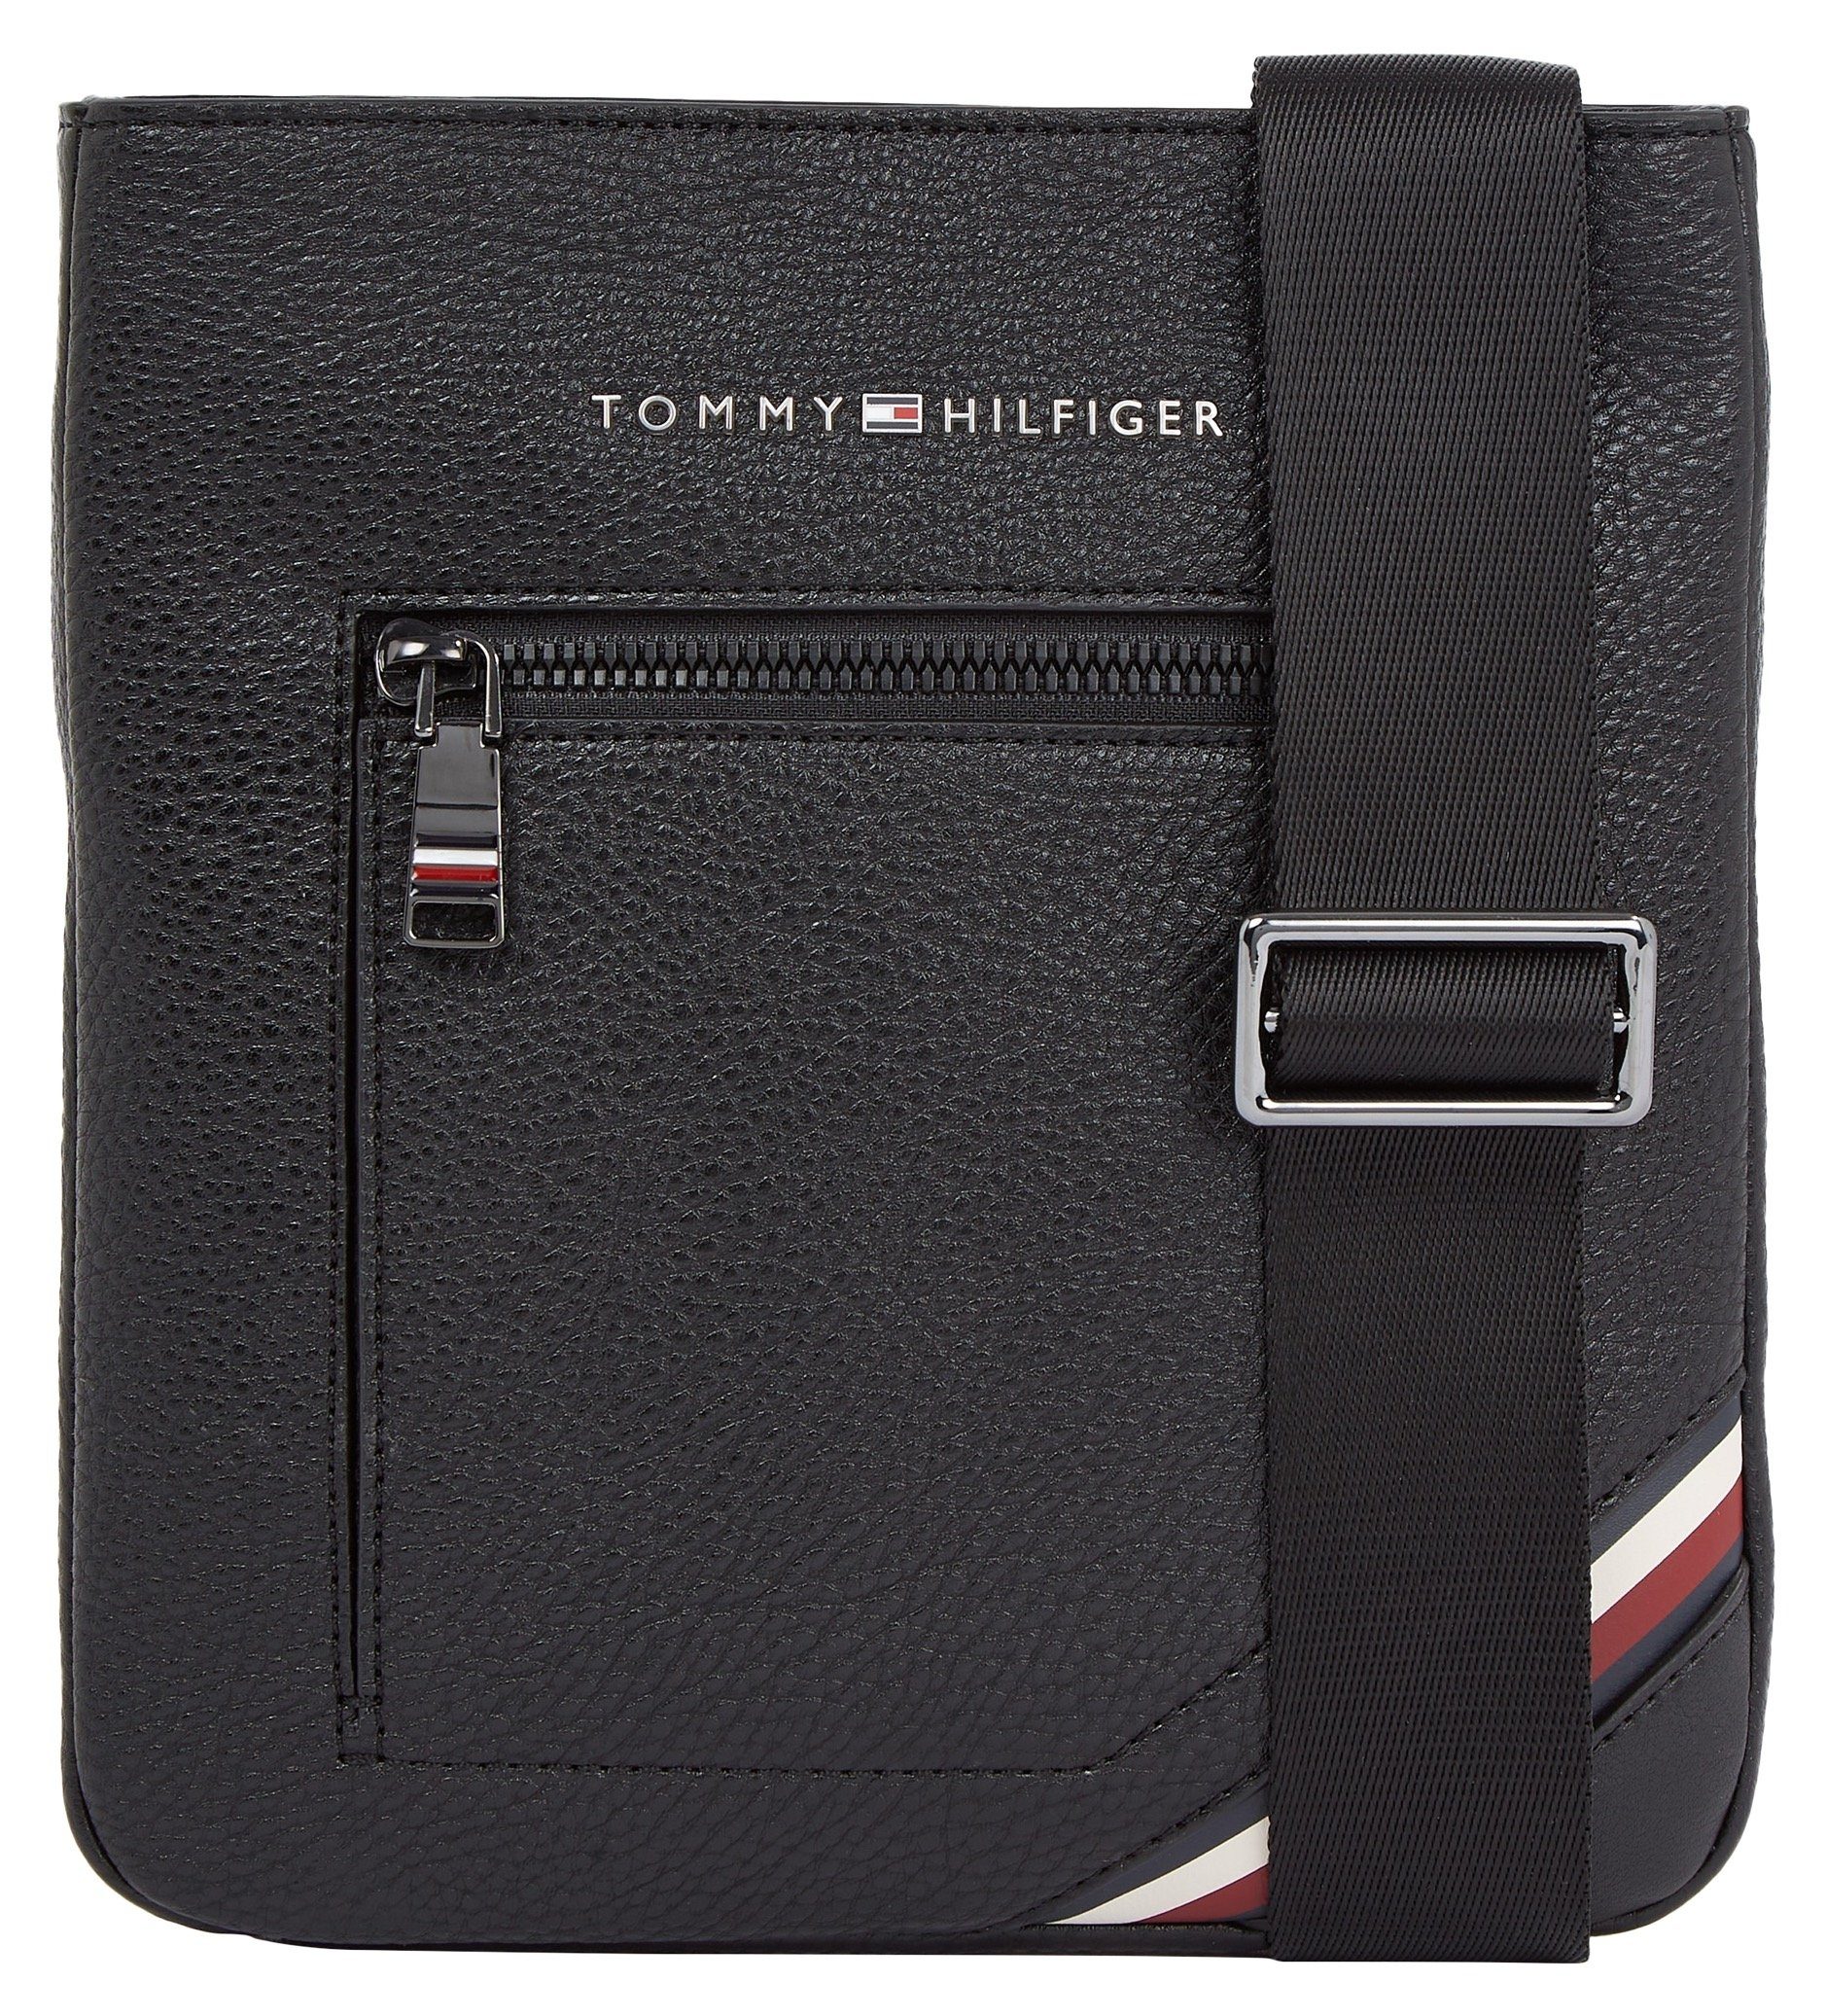 Hilfiger im TH Tommy Mini CENTRAL MINI CROSSOVER, praktischen Design Bag